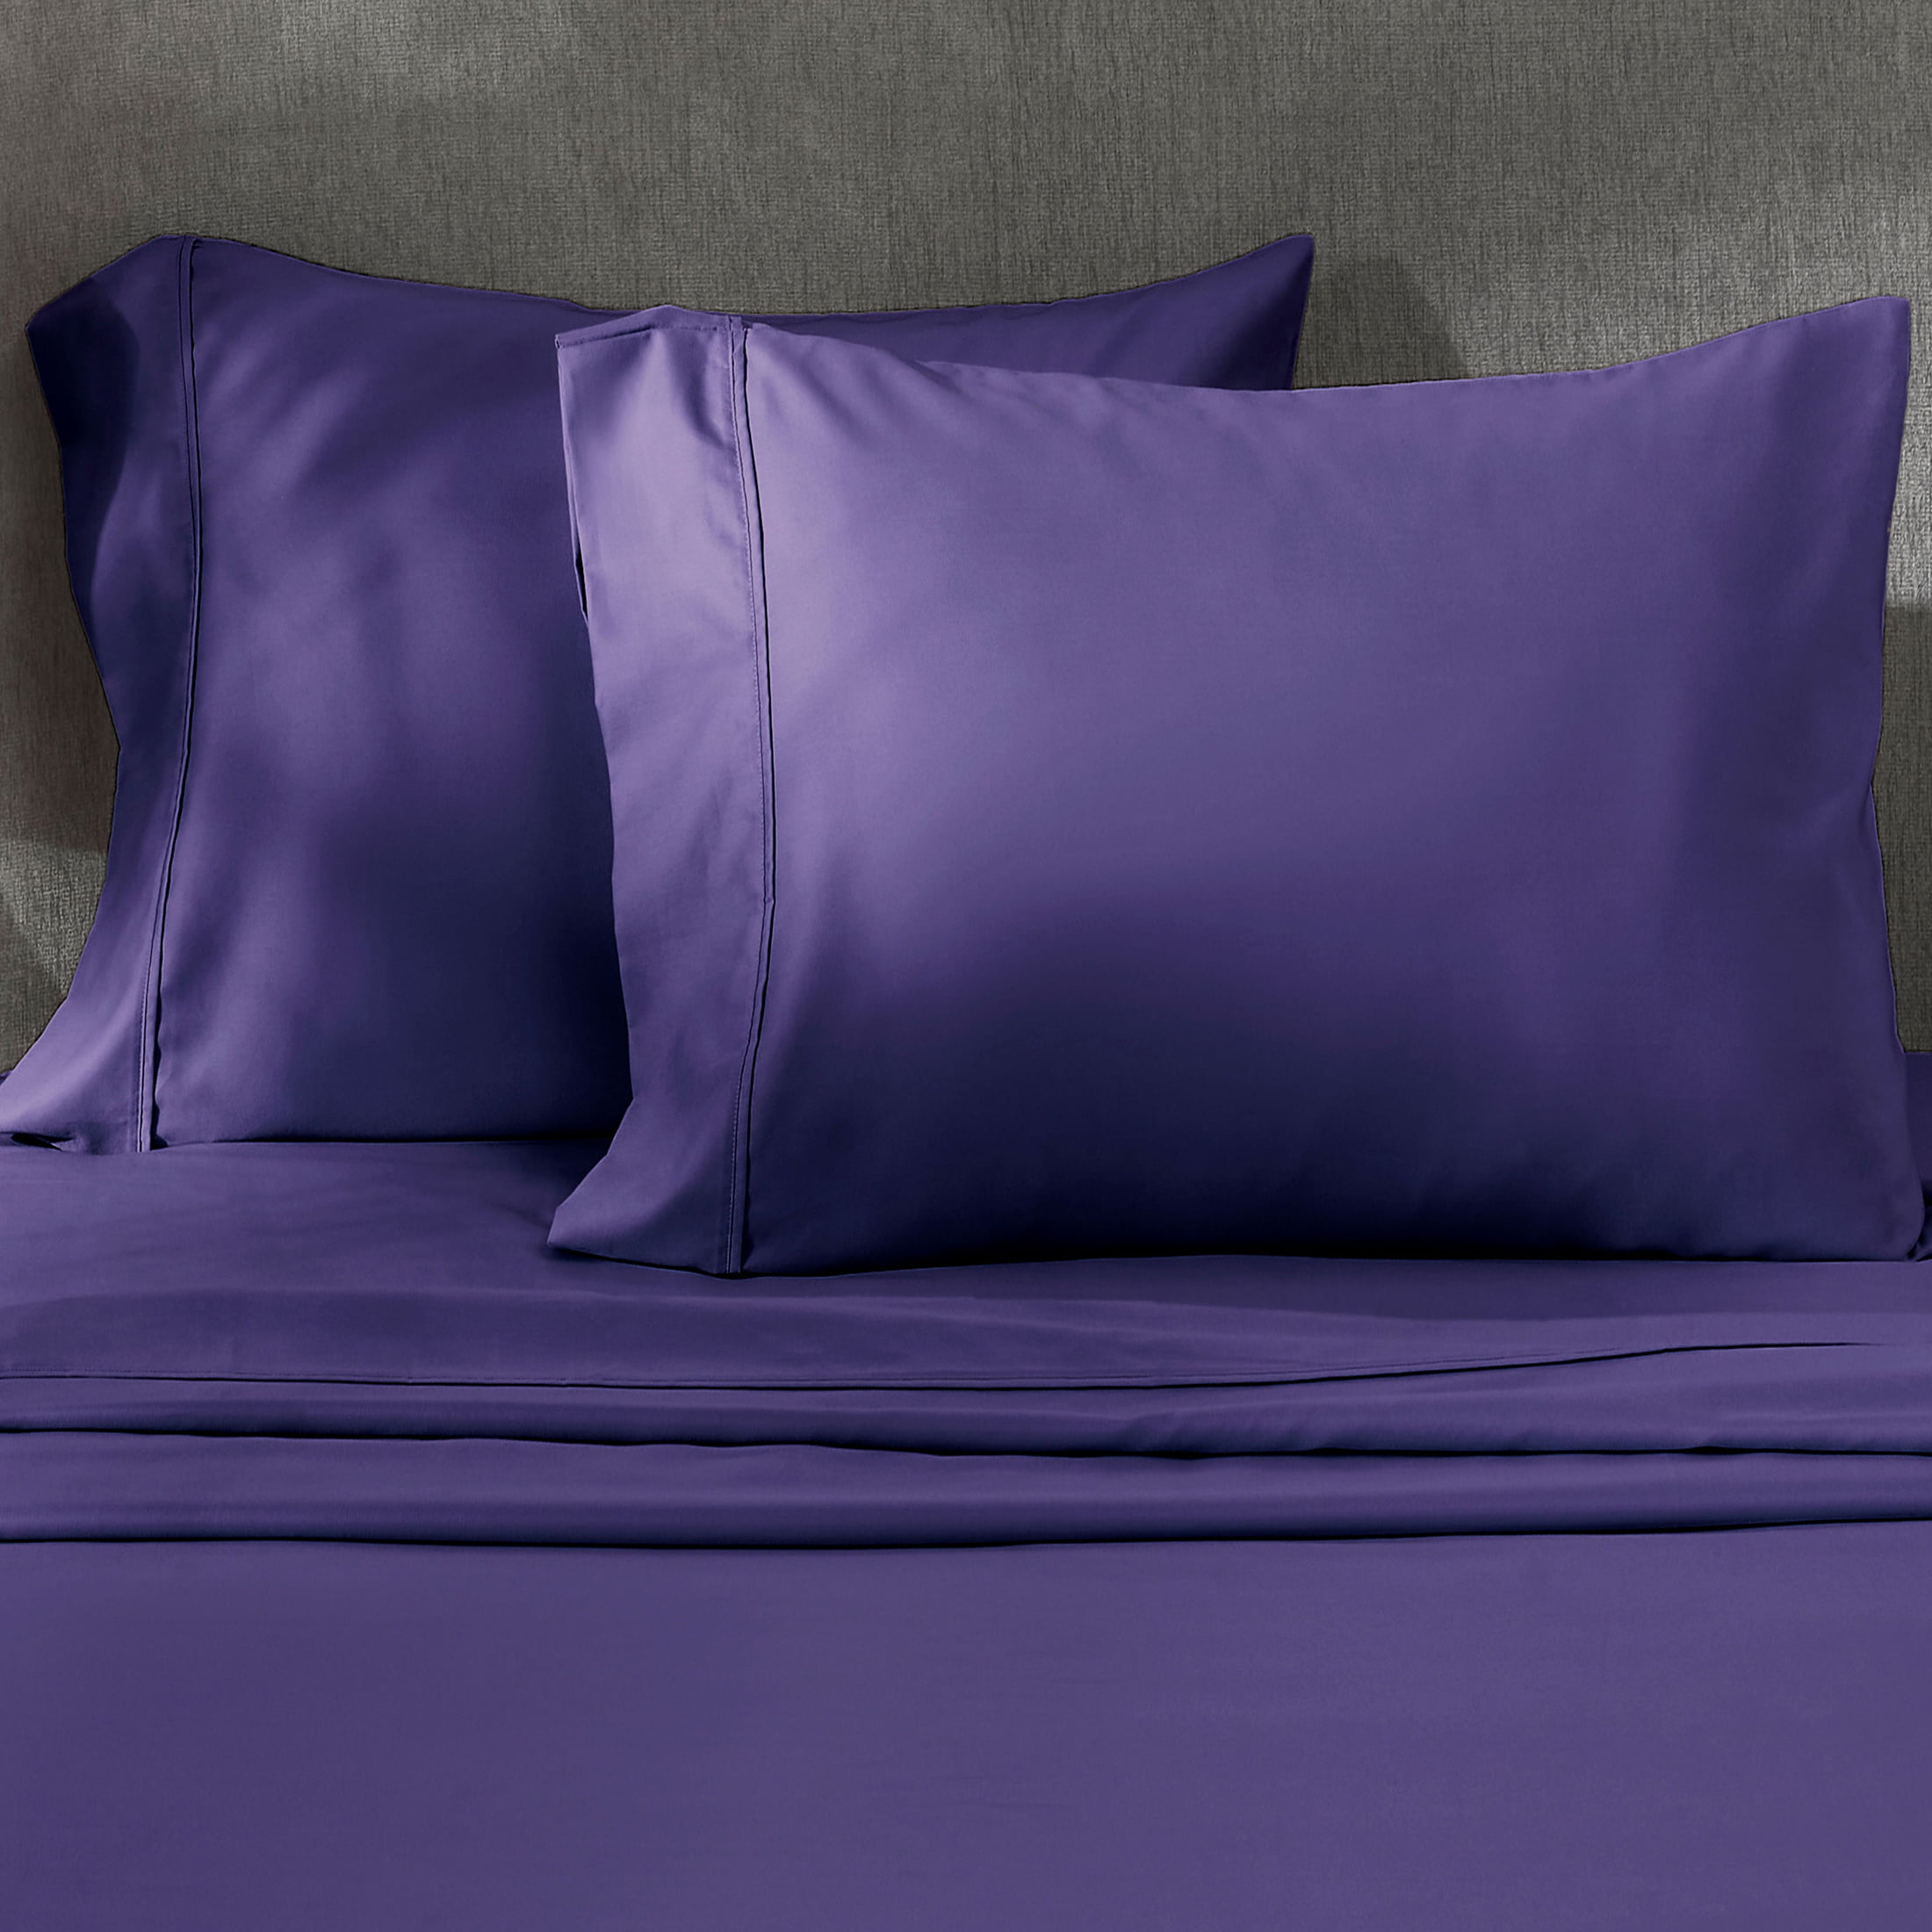 Purple Pillow Case 100% Cotton Rectangle Plain Decorative King Pillow Case Cover 